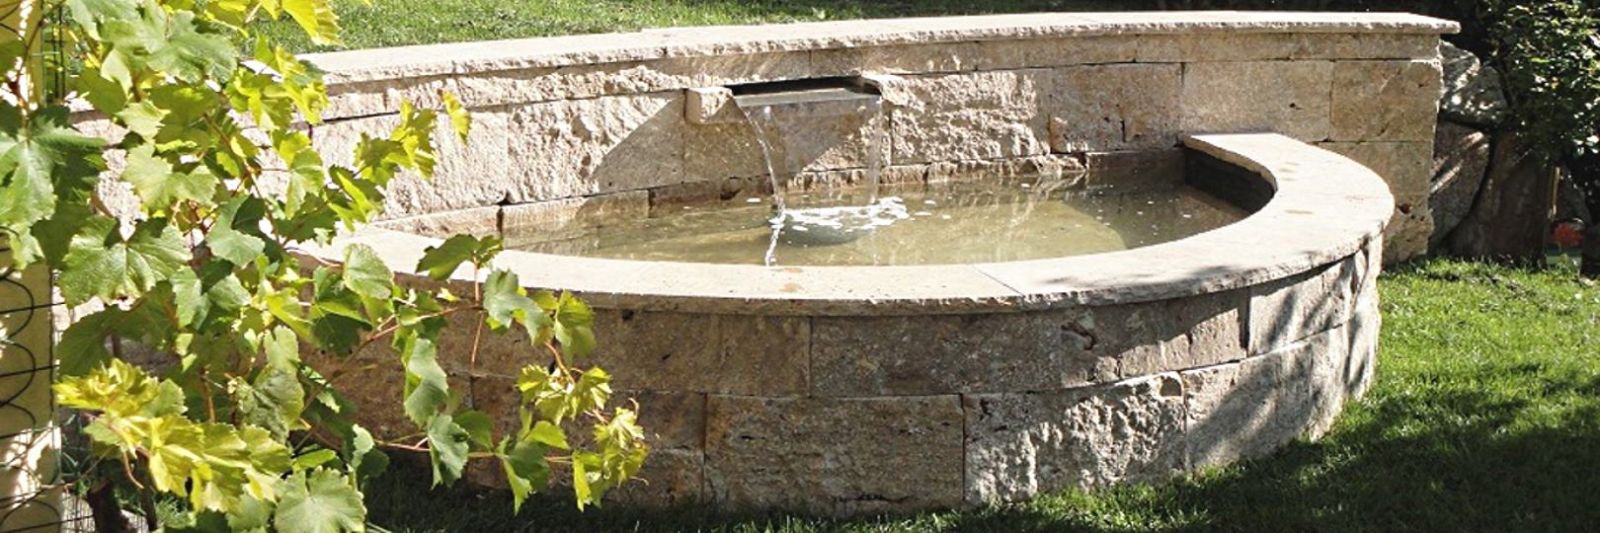 Brunnen aus Travertin Mauersteinen